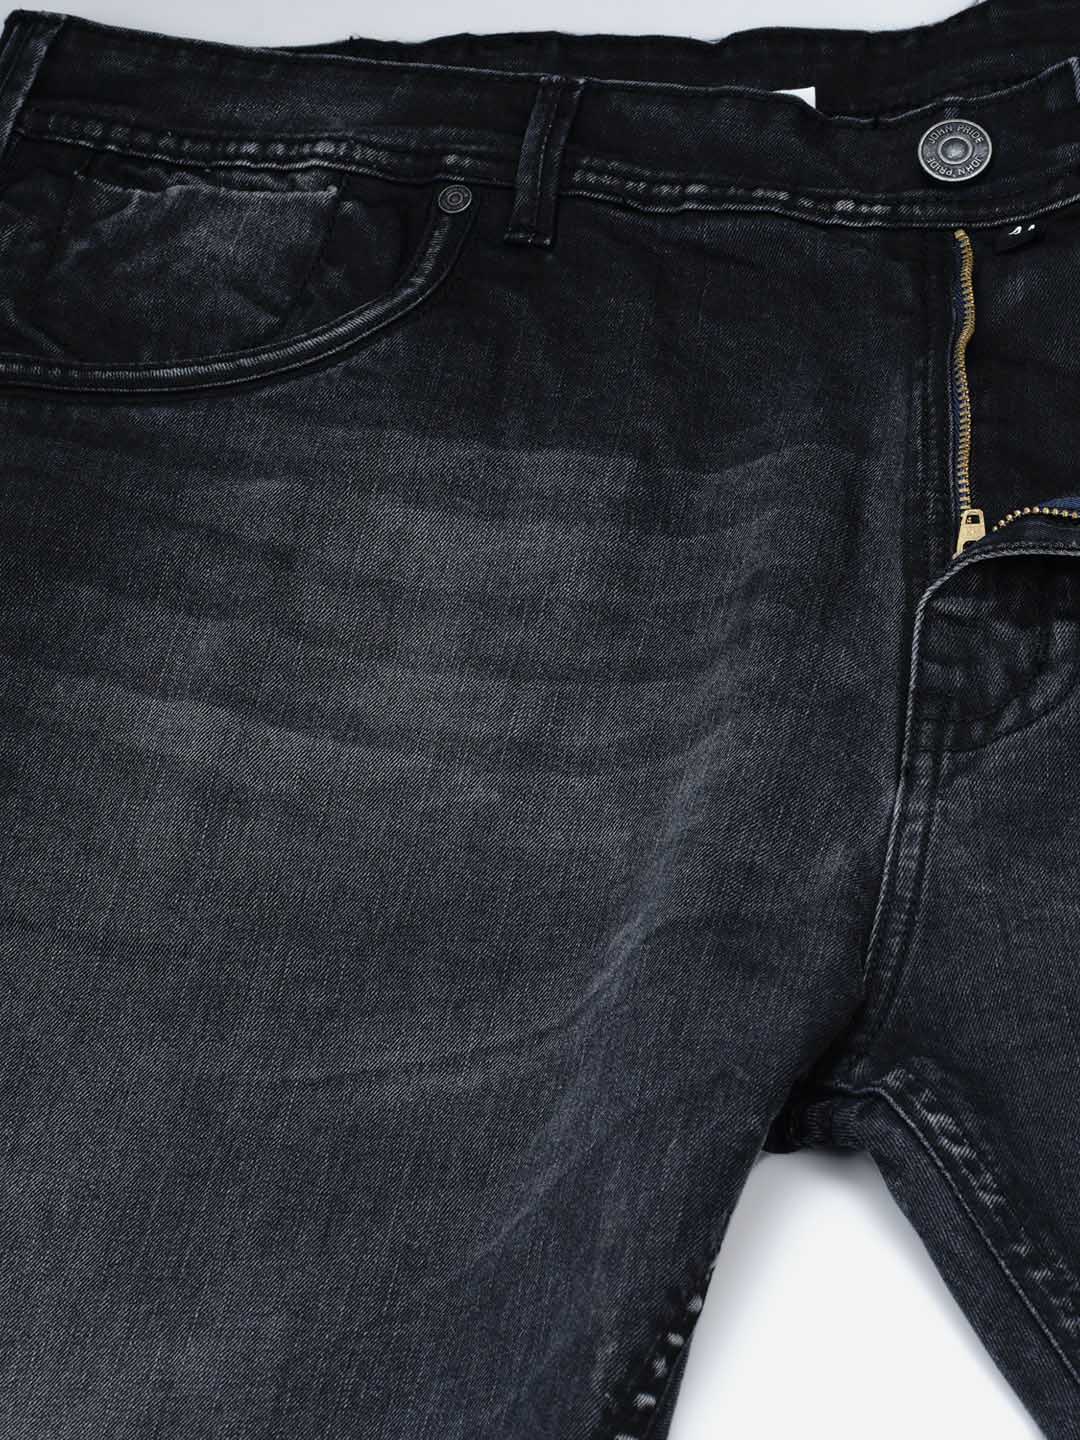 bottomwear/jeans/JPJ12119/jpj12119-2.jpg